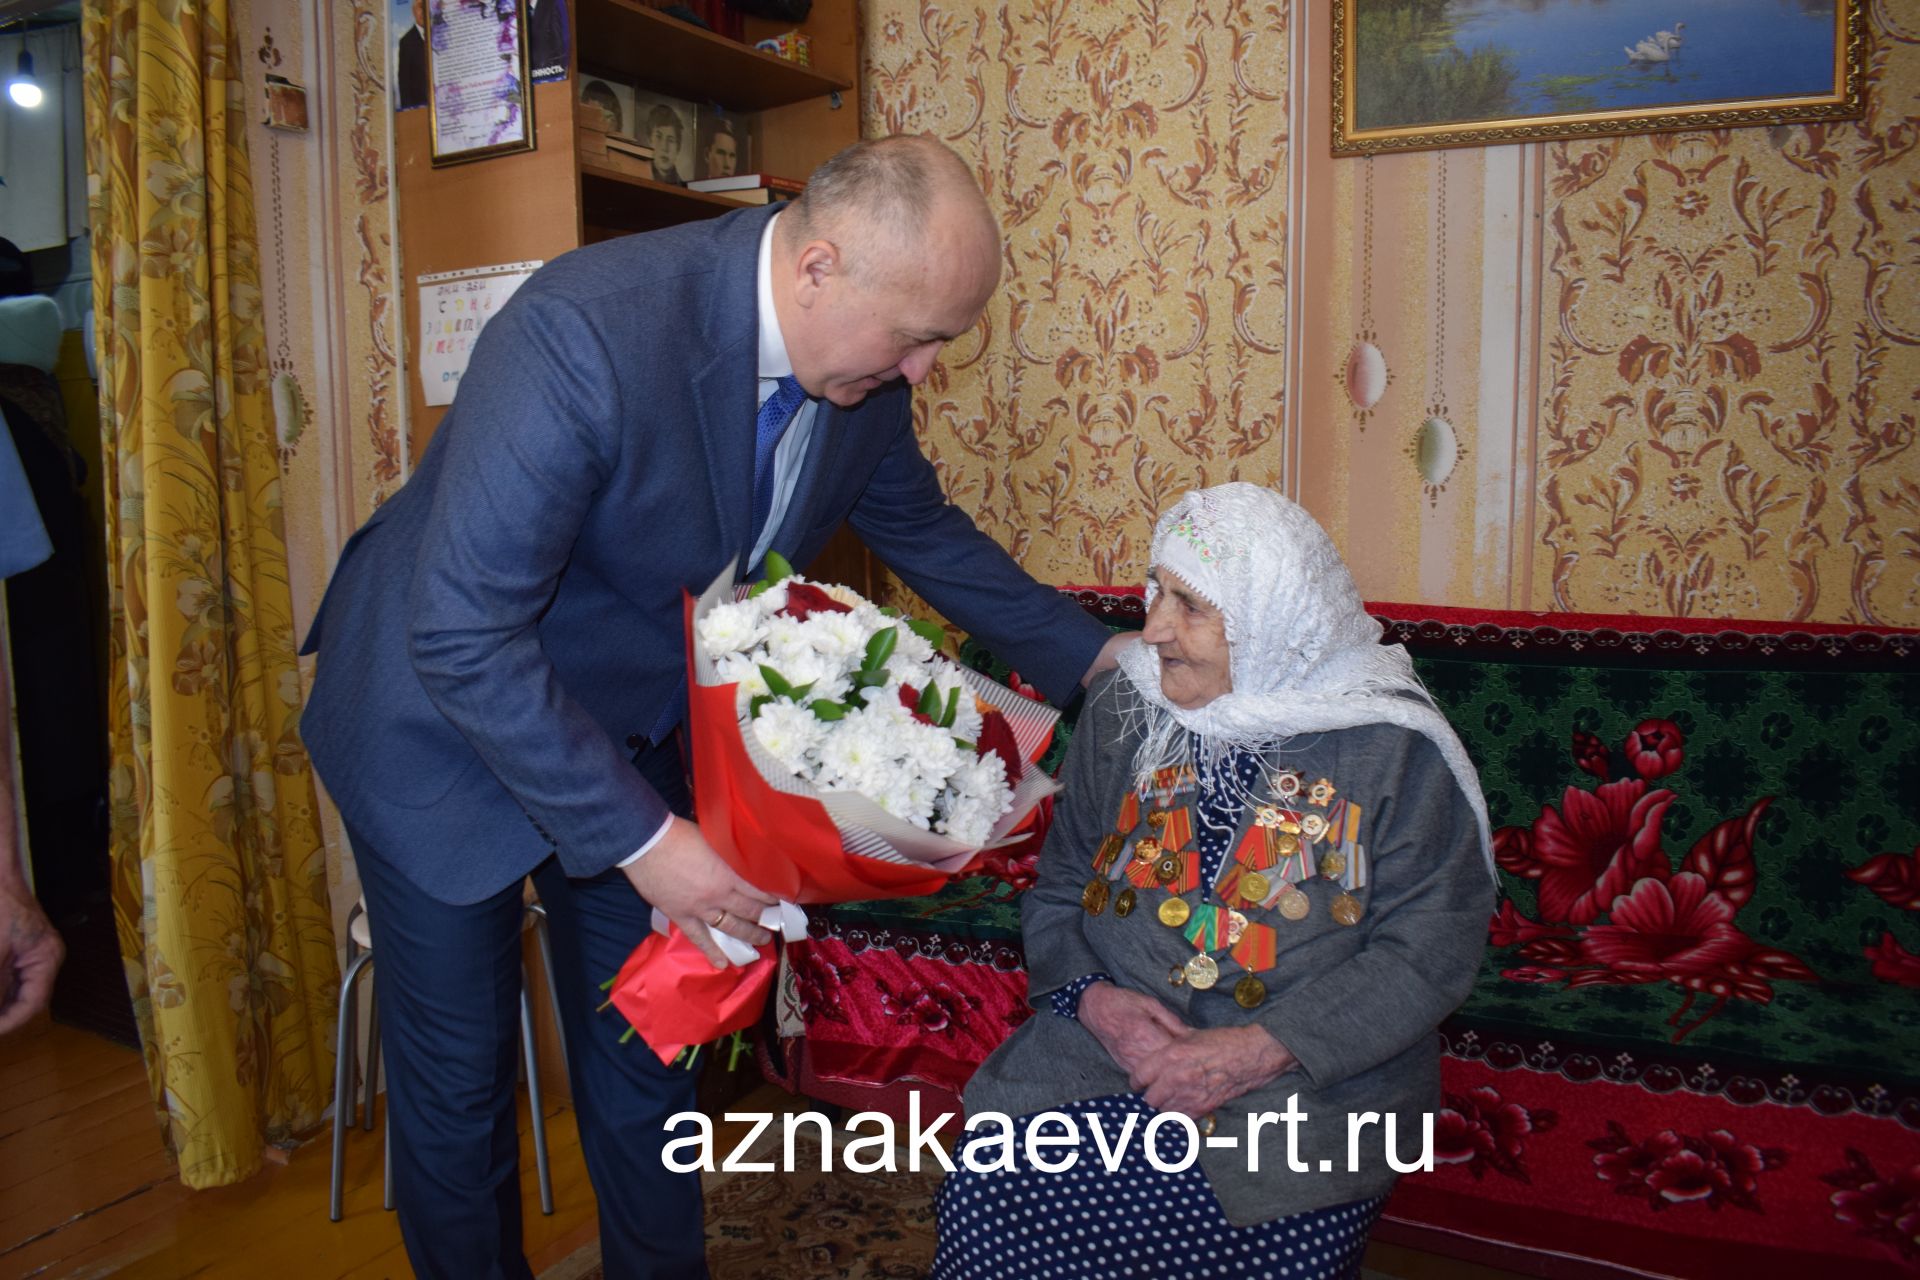 Жительнице Азнакаево, ветерану войны Гильминур Заляевой исполнилось 100 лет